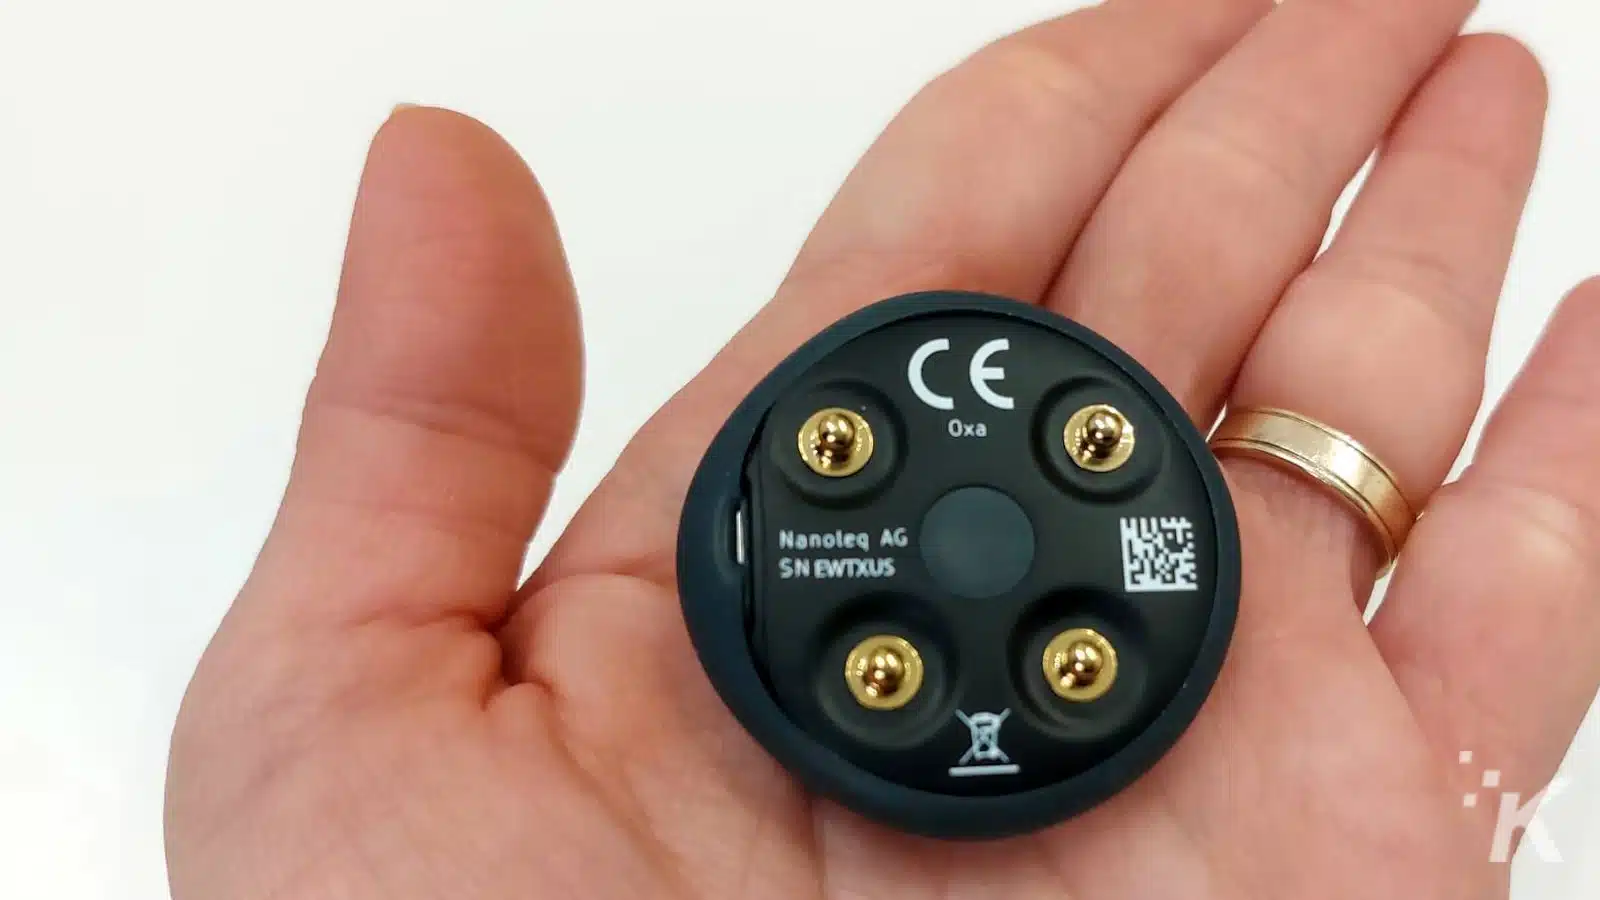 กุมมืออุปกรณ์อิเล็กทรอนิกส์ขนาดเล็กที่มีเครื่องหมาย CE